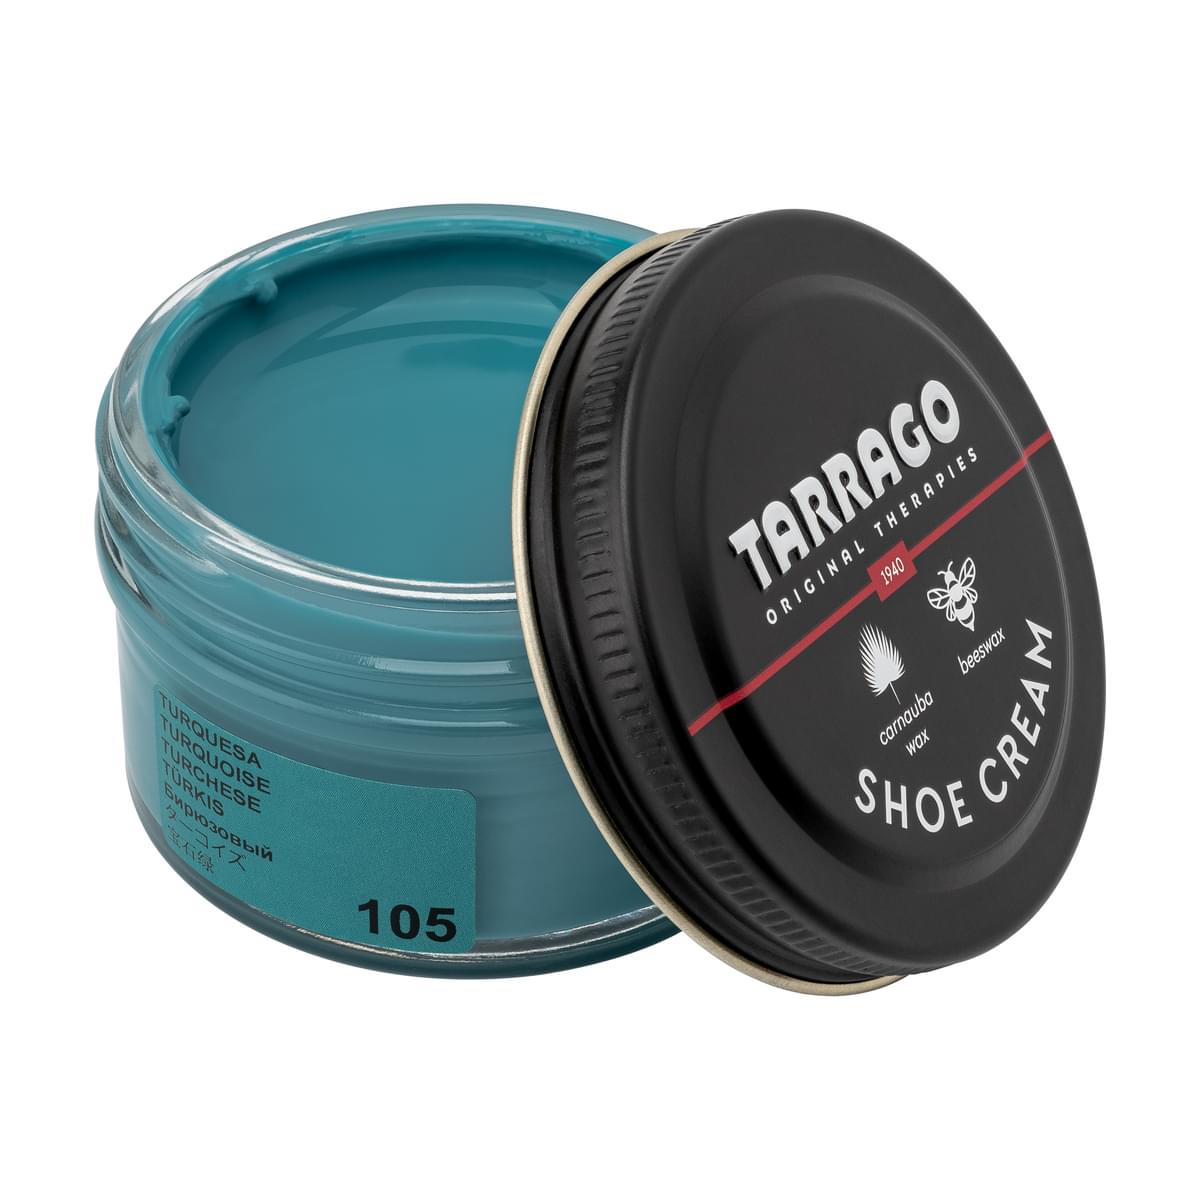 Tarrago Shoe Cream  - Turquoise - 105